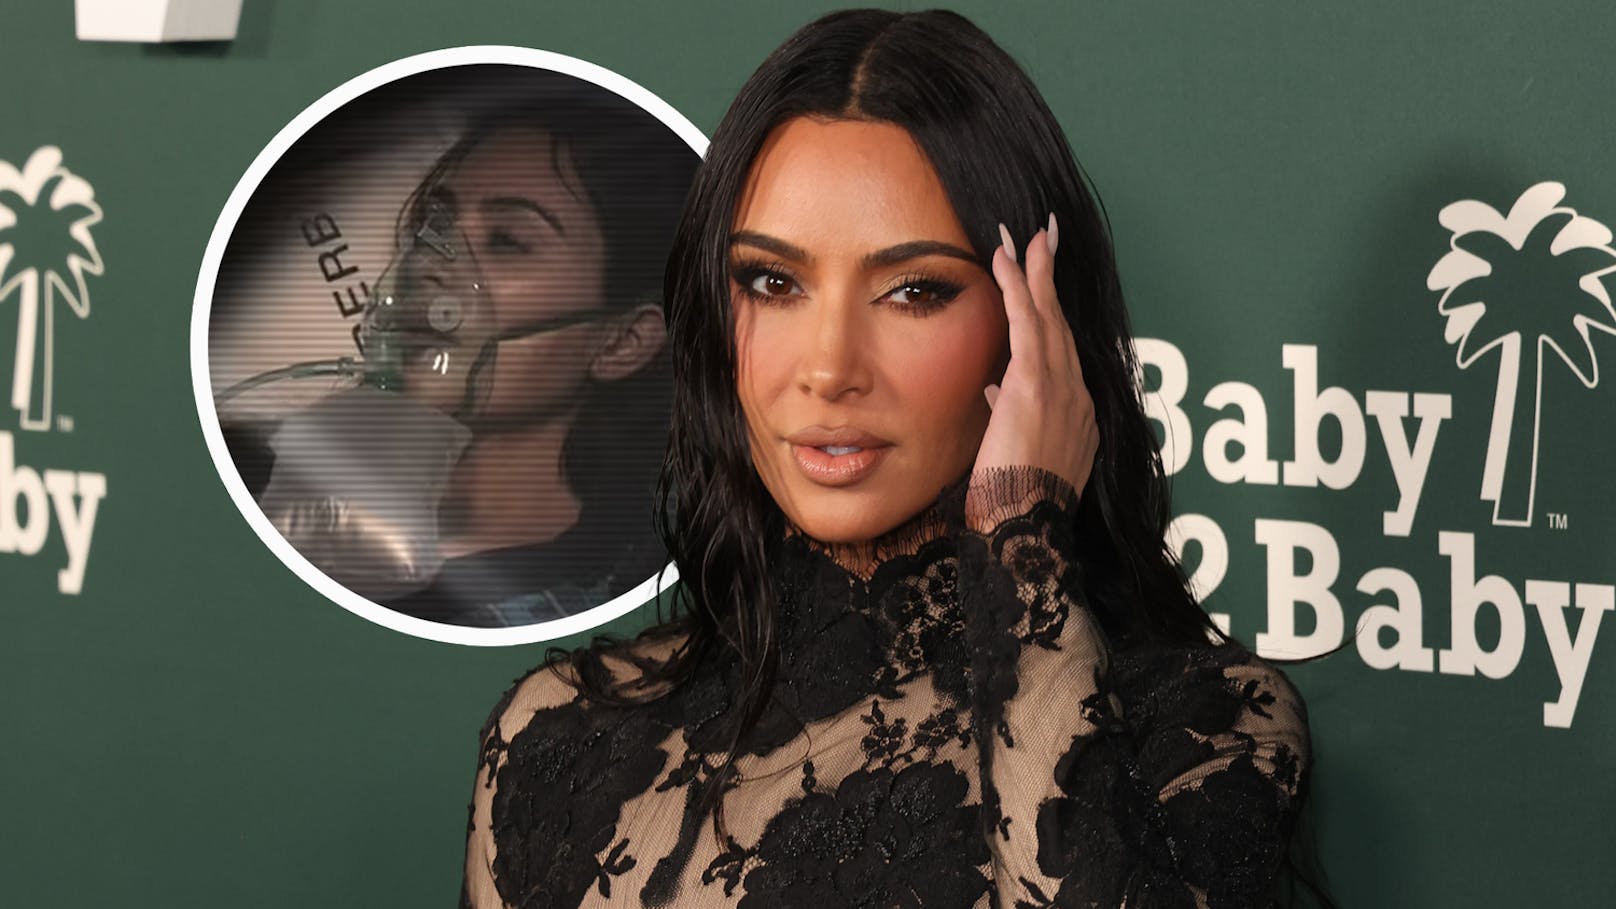 "Knochen steht raus!" – Kardashian bei Unfall verletzt